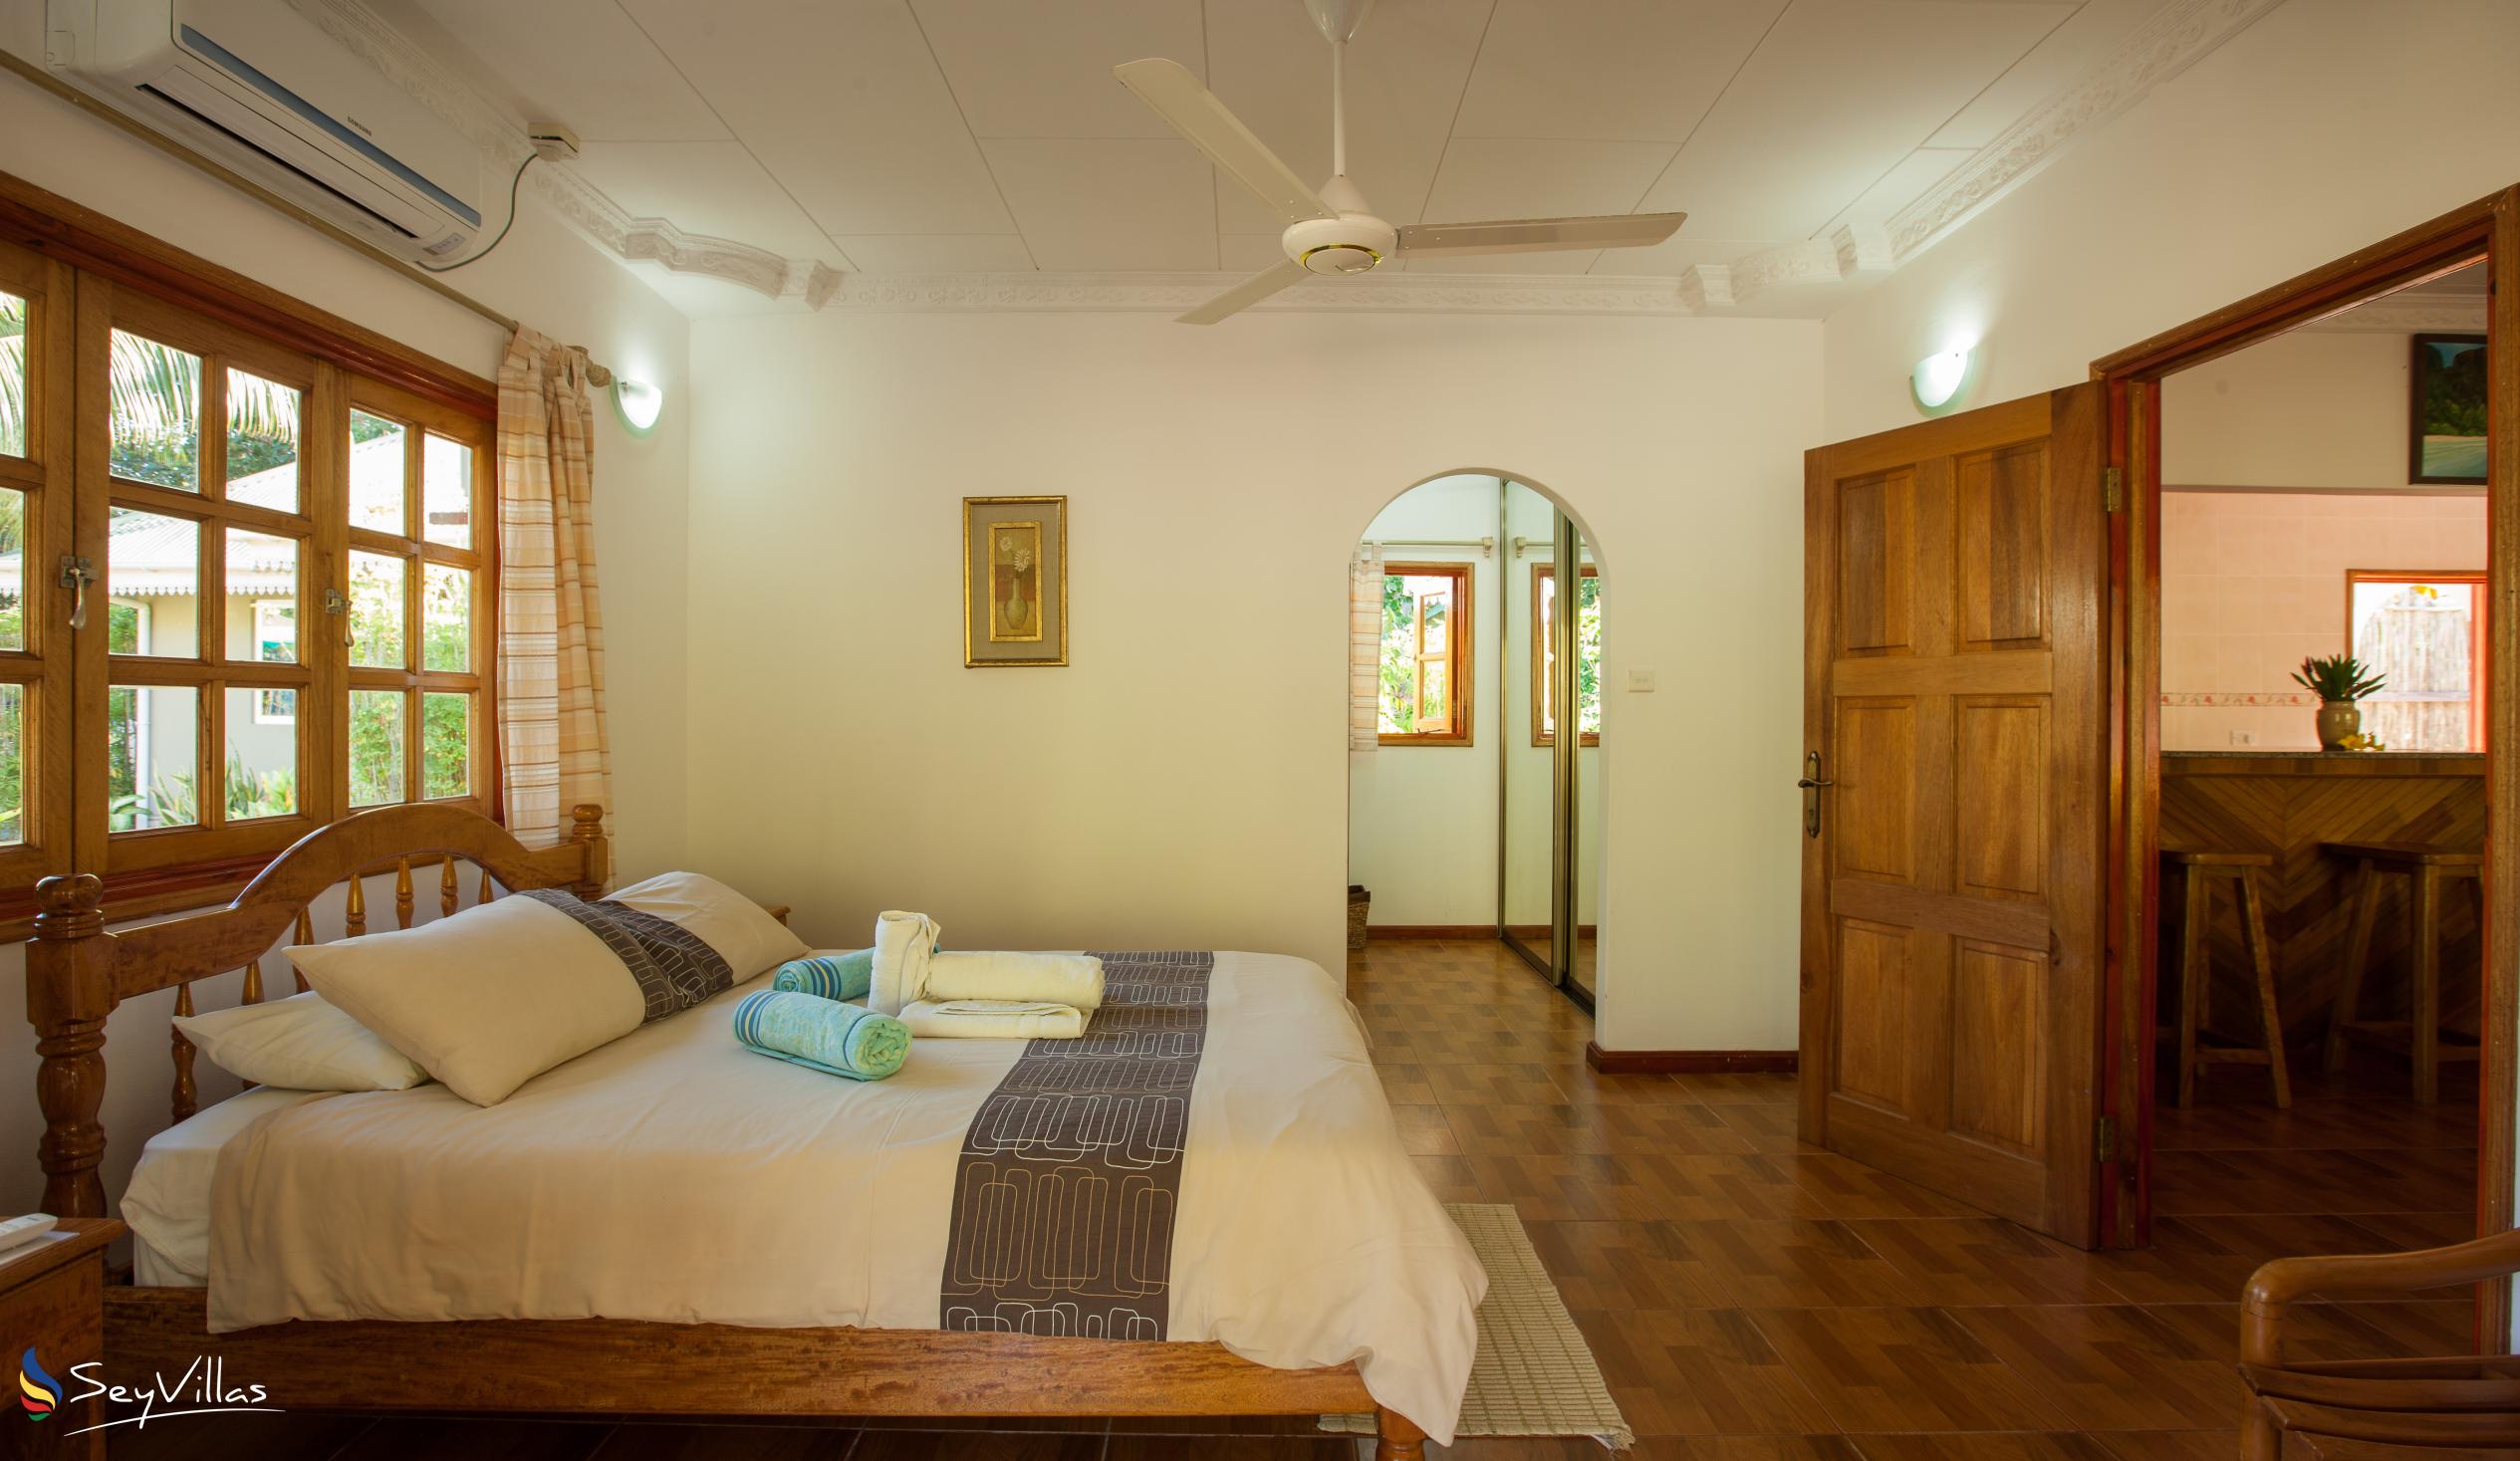 Photo 49: Casa de Leela - 2-Bedroom Bungalow - La Digue (Seychelles)